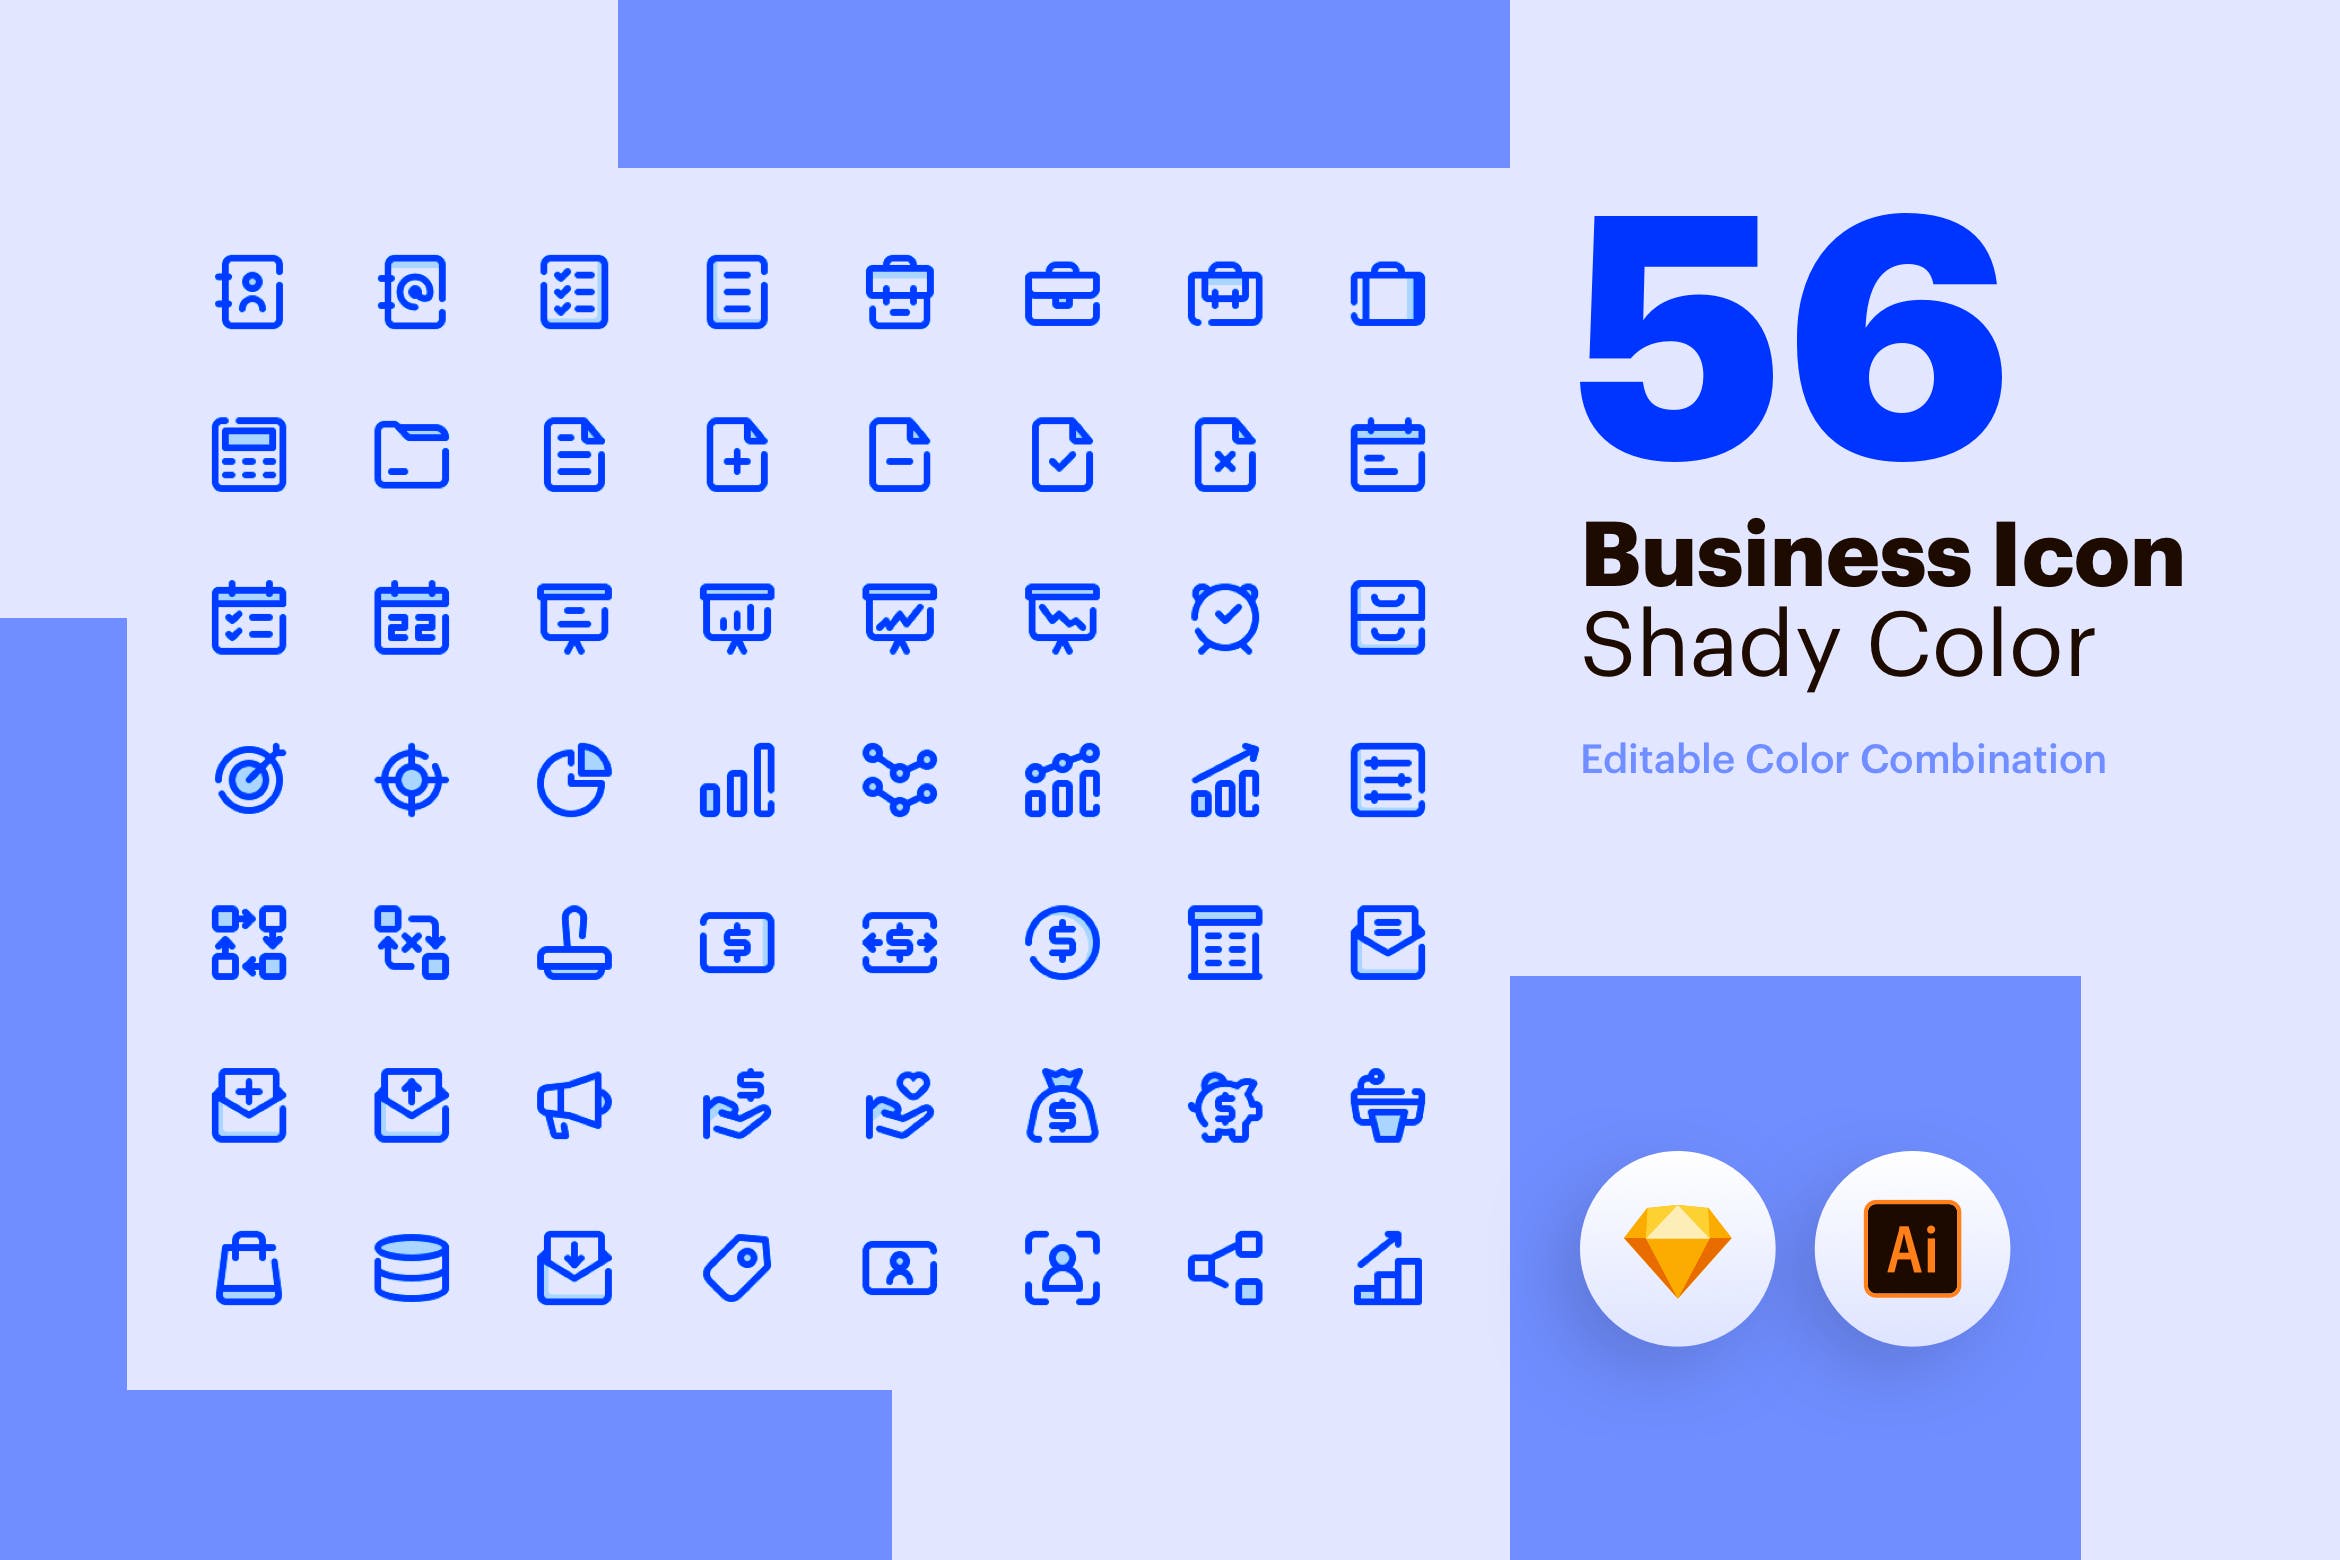 56枚商业主题彩色阴影矢量蚂蚁素材精选图标素材包 Business Icon – Shady Color插图